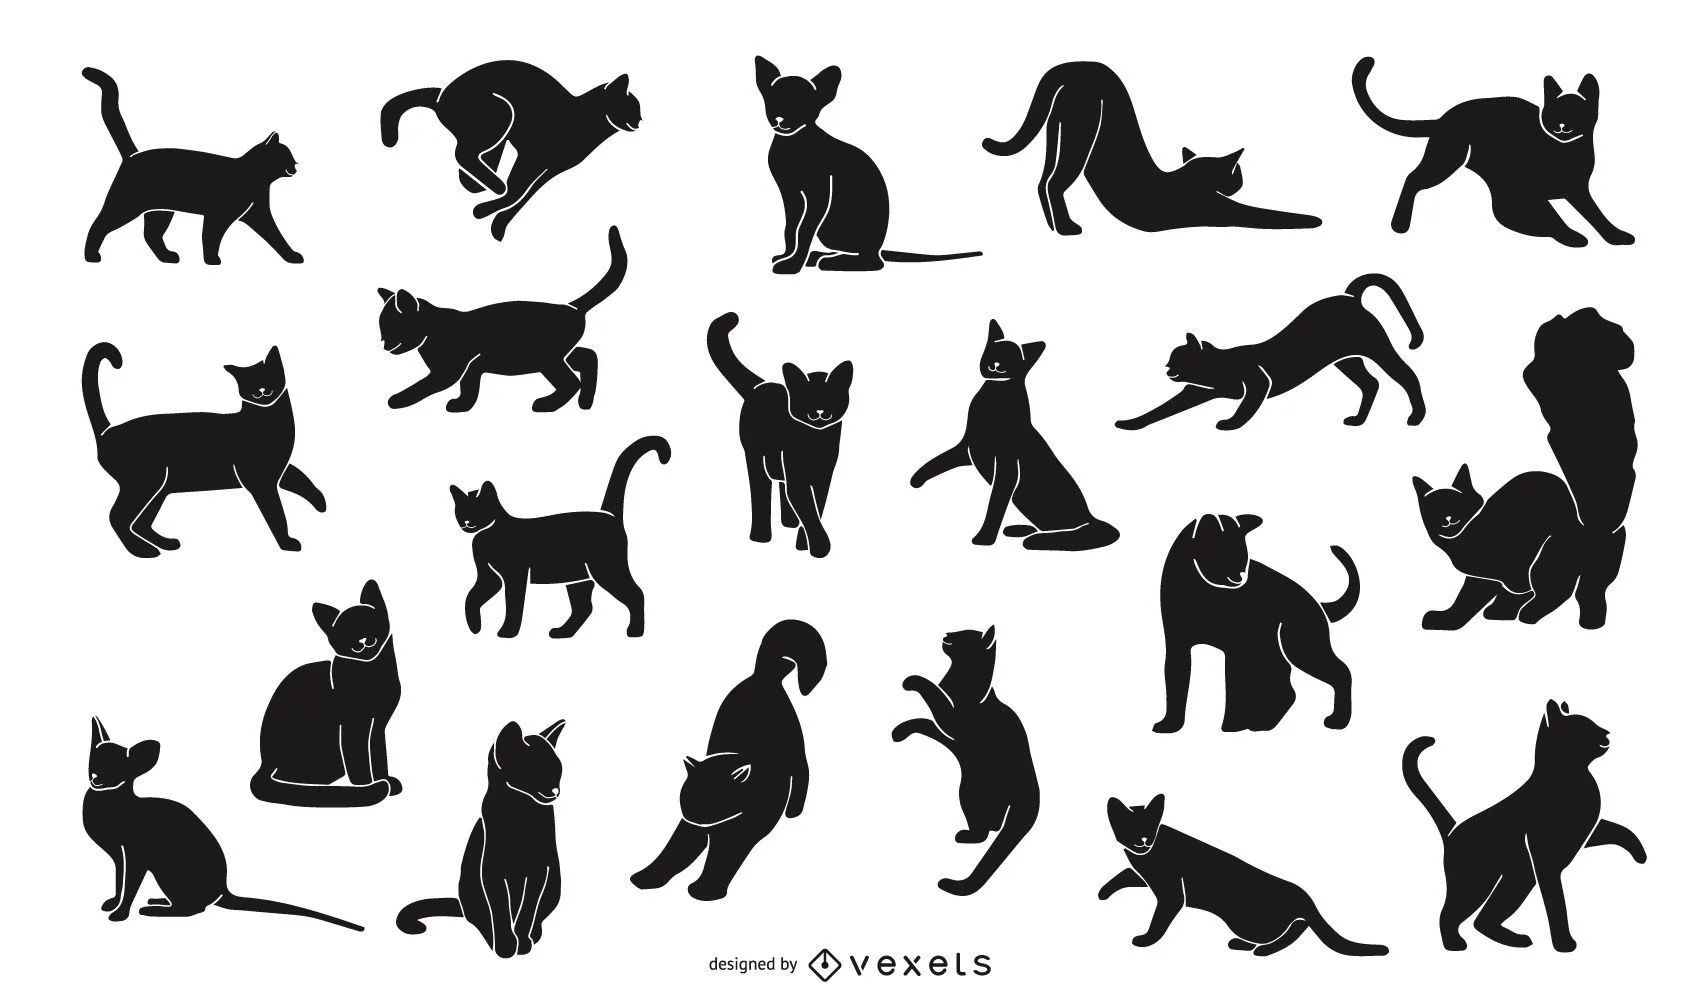 Vectores & Gráficos de silueta de gato para descargar